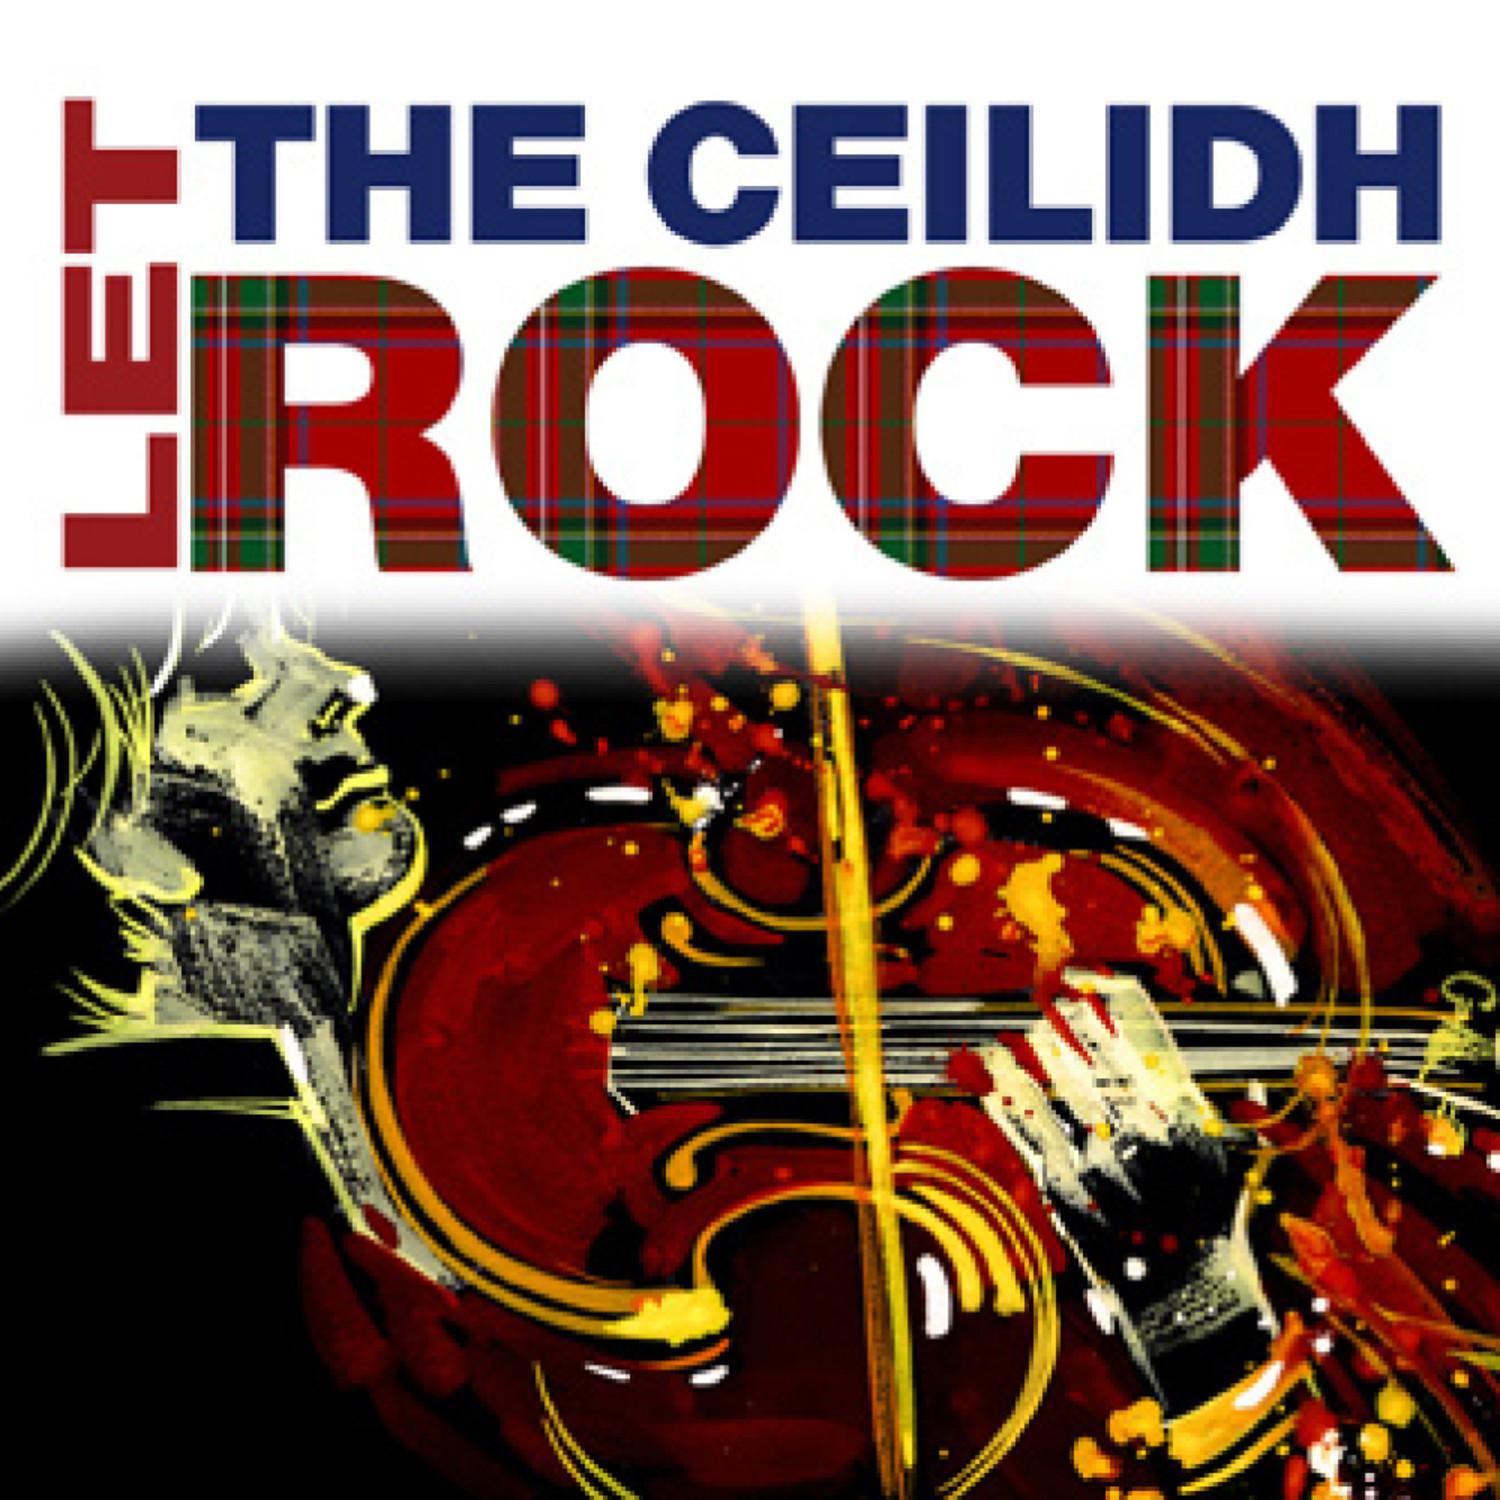 Let The Ceilidh Rock